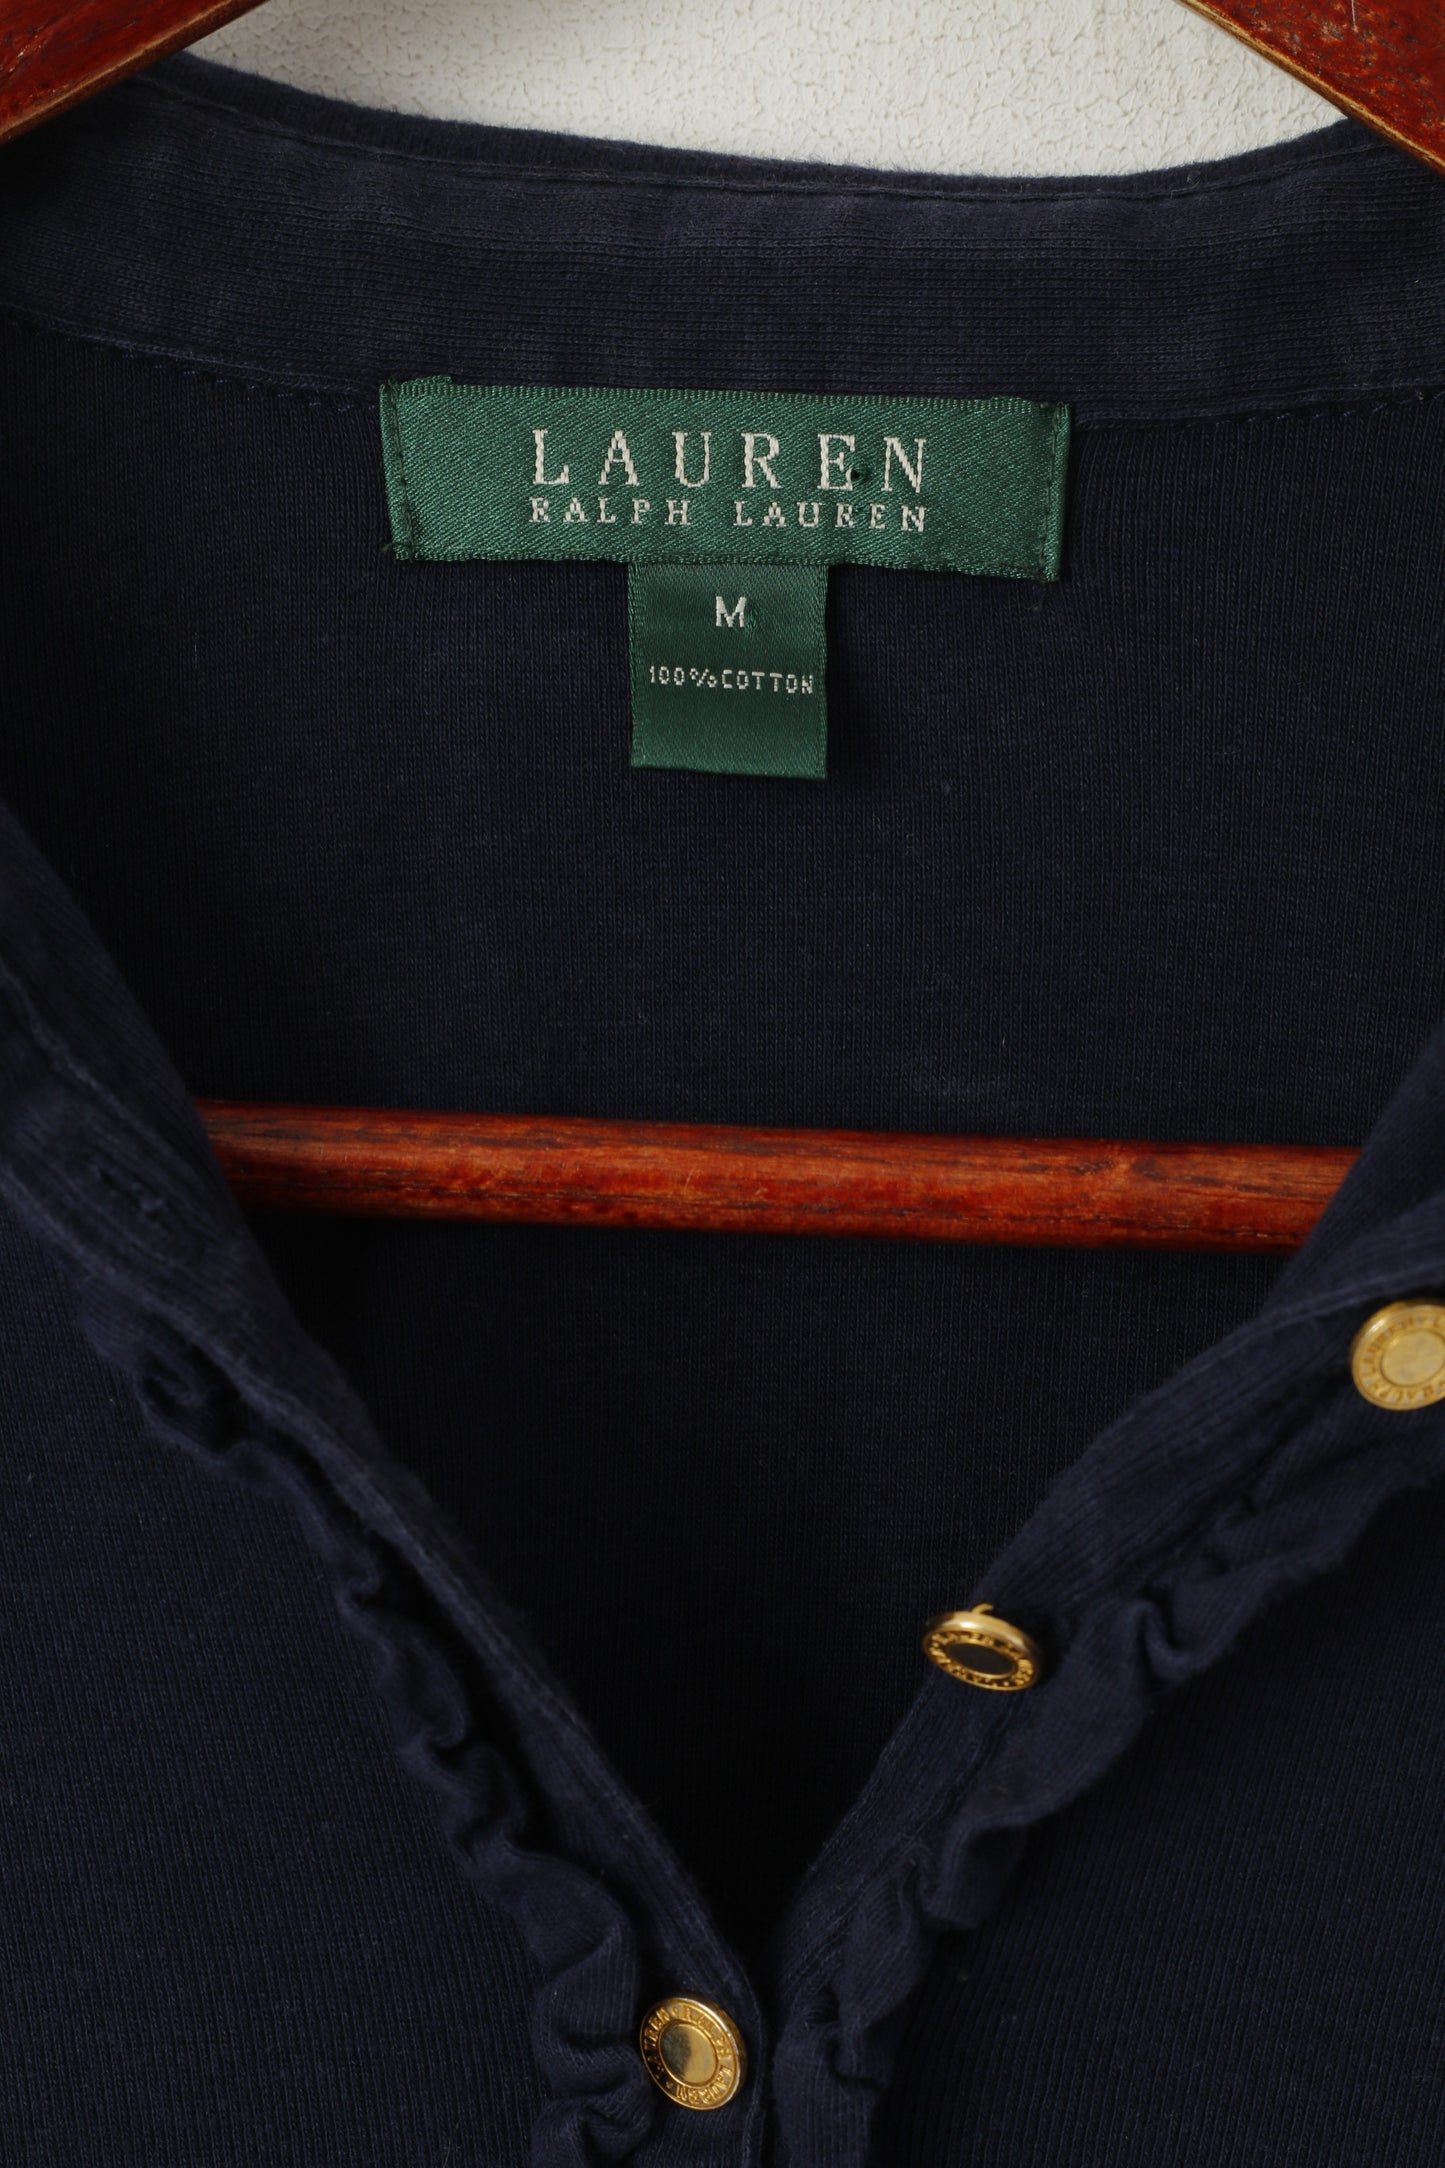 Lauren Ralph Lauren Women M Polo Shirt Navy Cotton Stretch Short Sleeve Plain Top